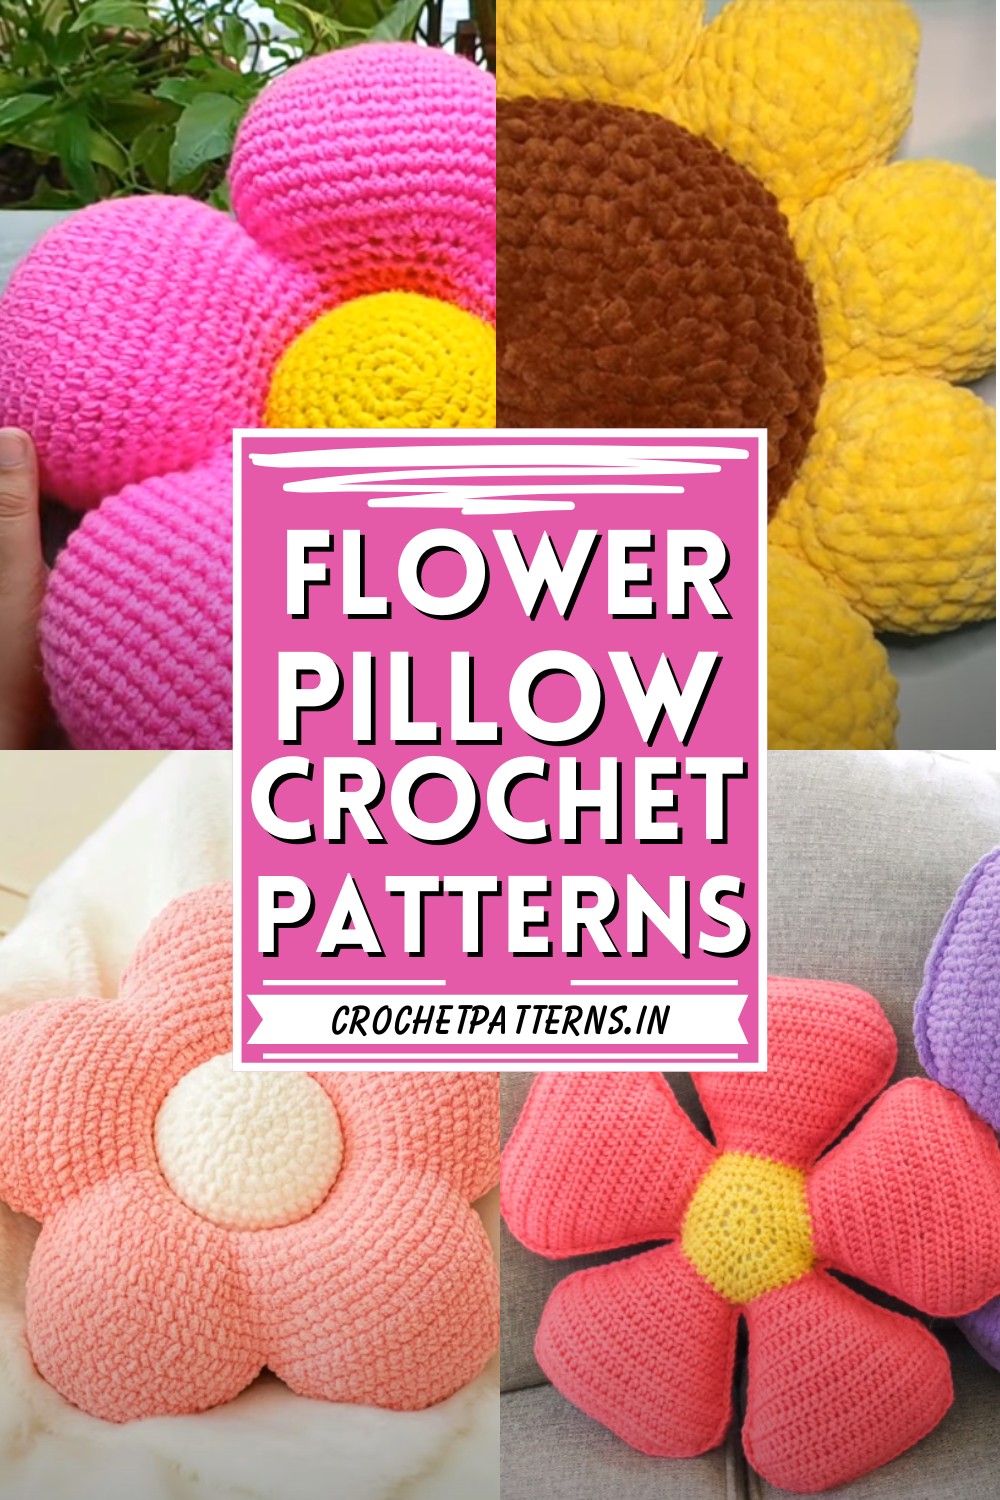 Crochet Flower Pillow Patterns